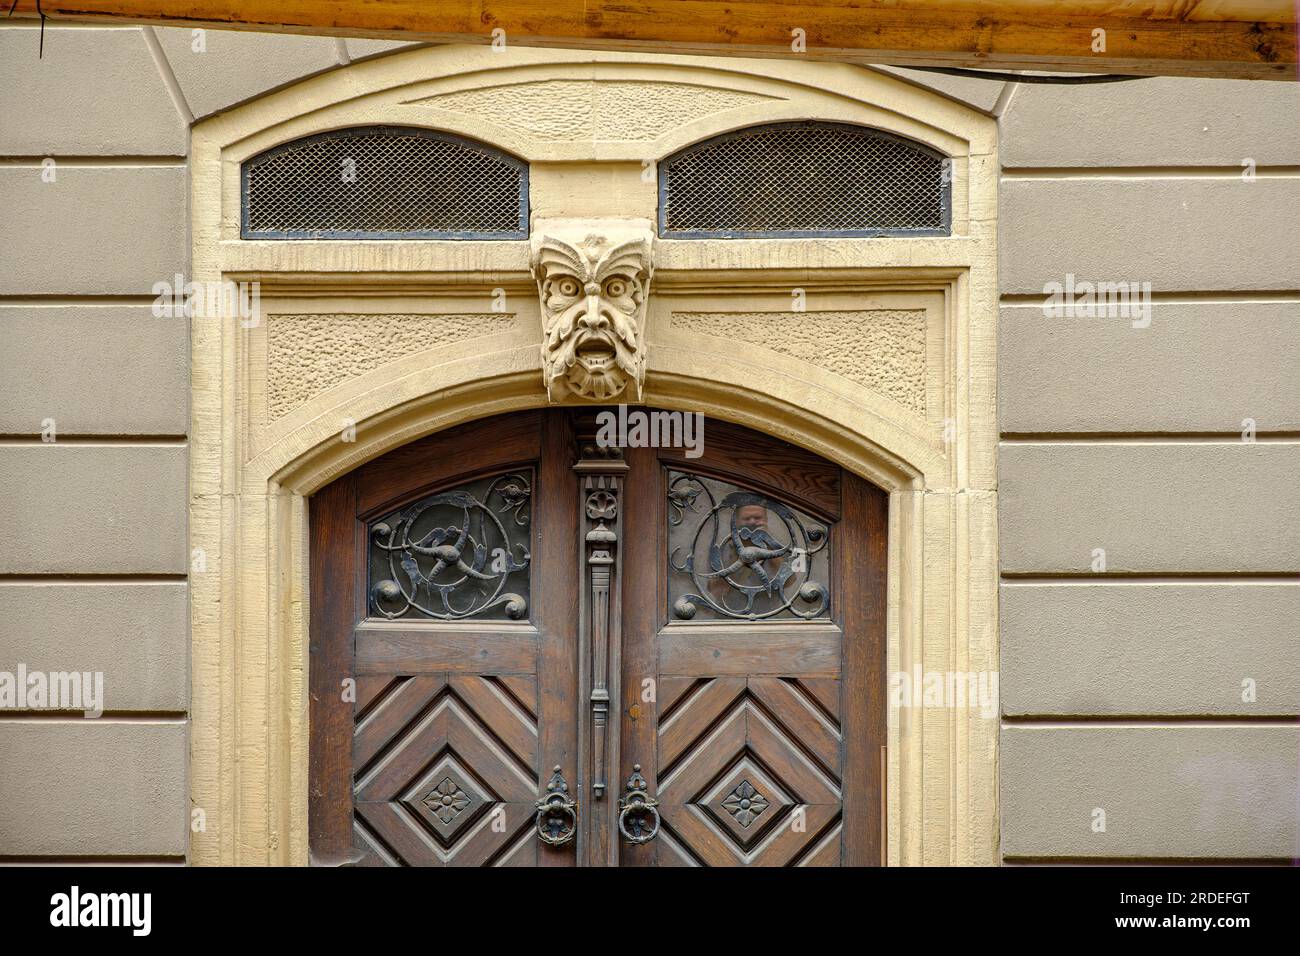 Classico cancello anteriore in legno con una faccia griffata come chiave di volta nell'arco di un edificio storico nel centro storico di Gotha, Turingia, Germania. Foto Stock